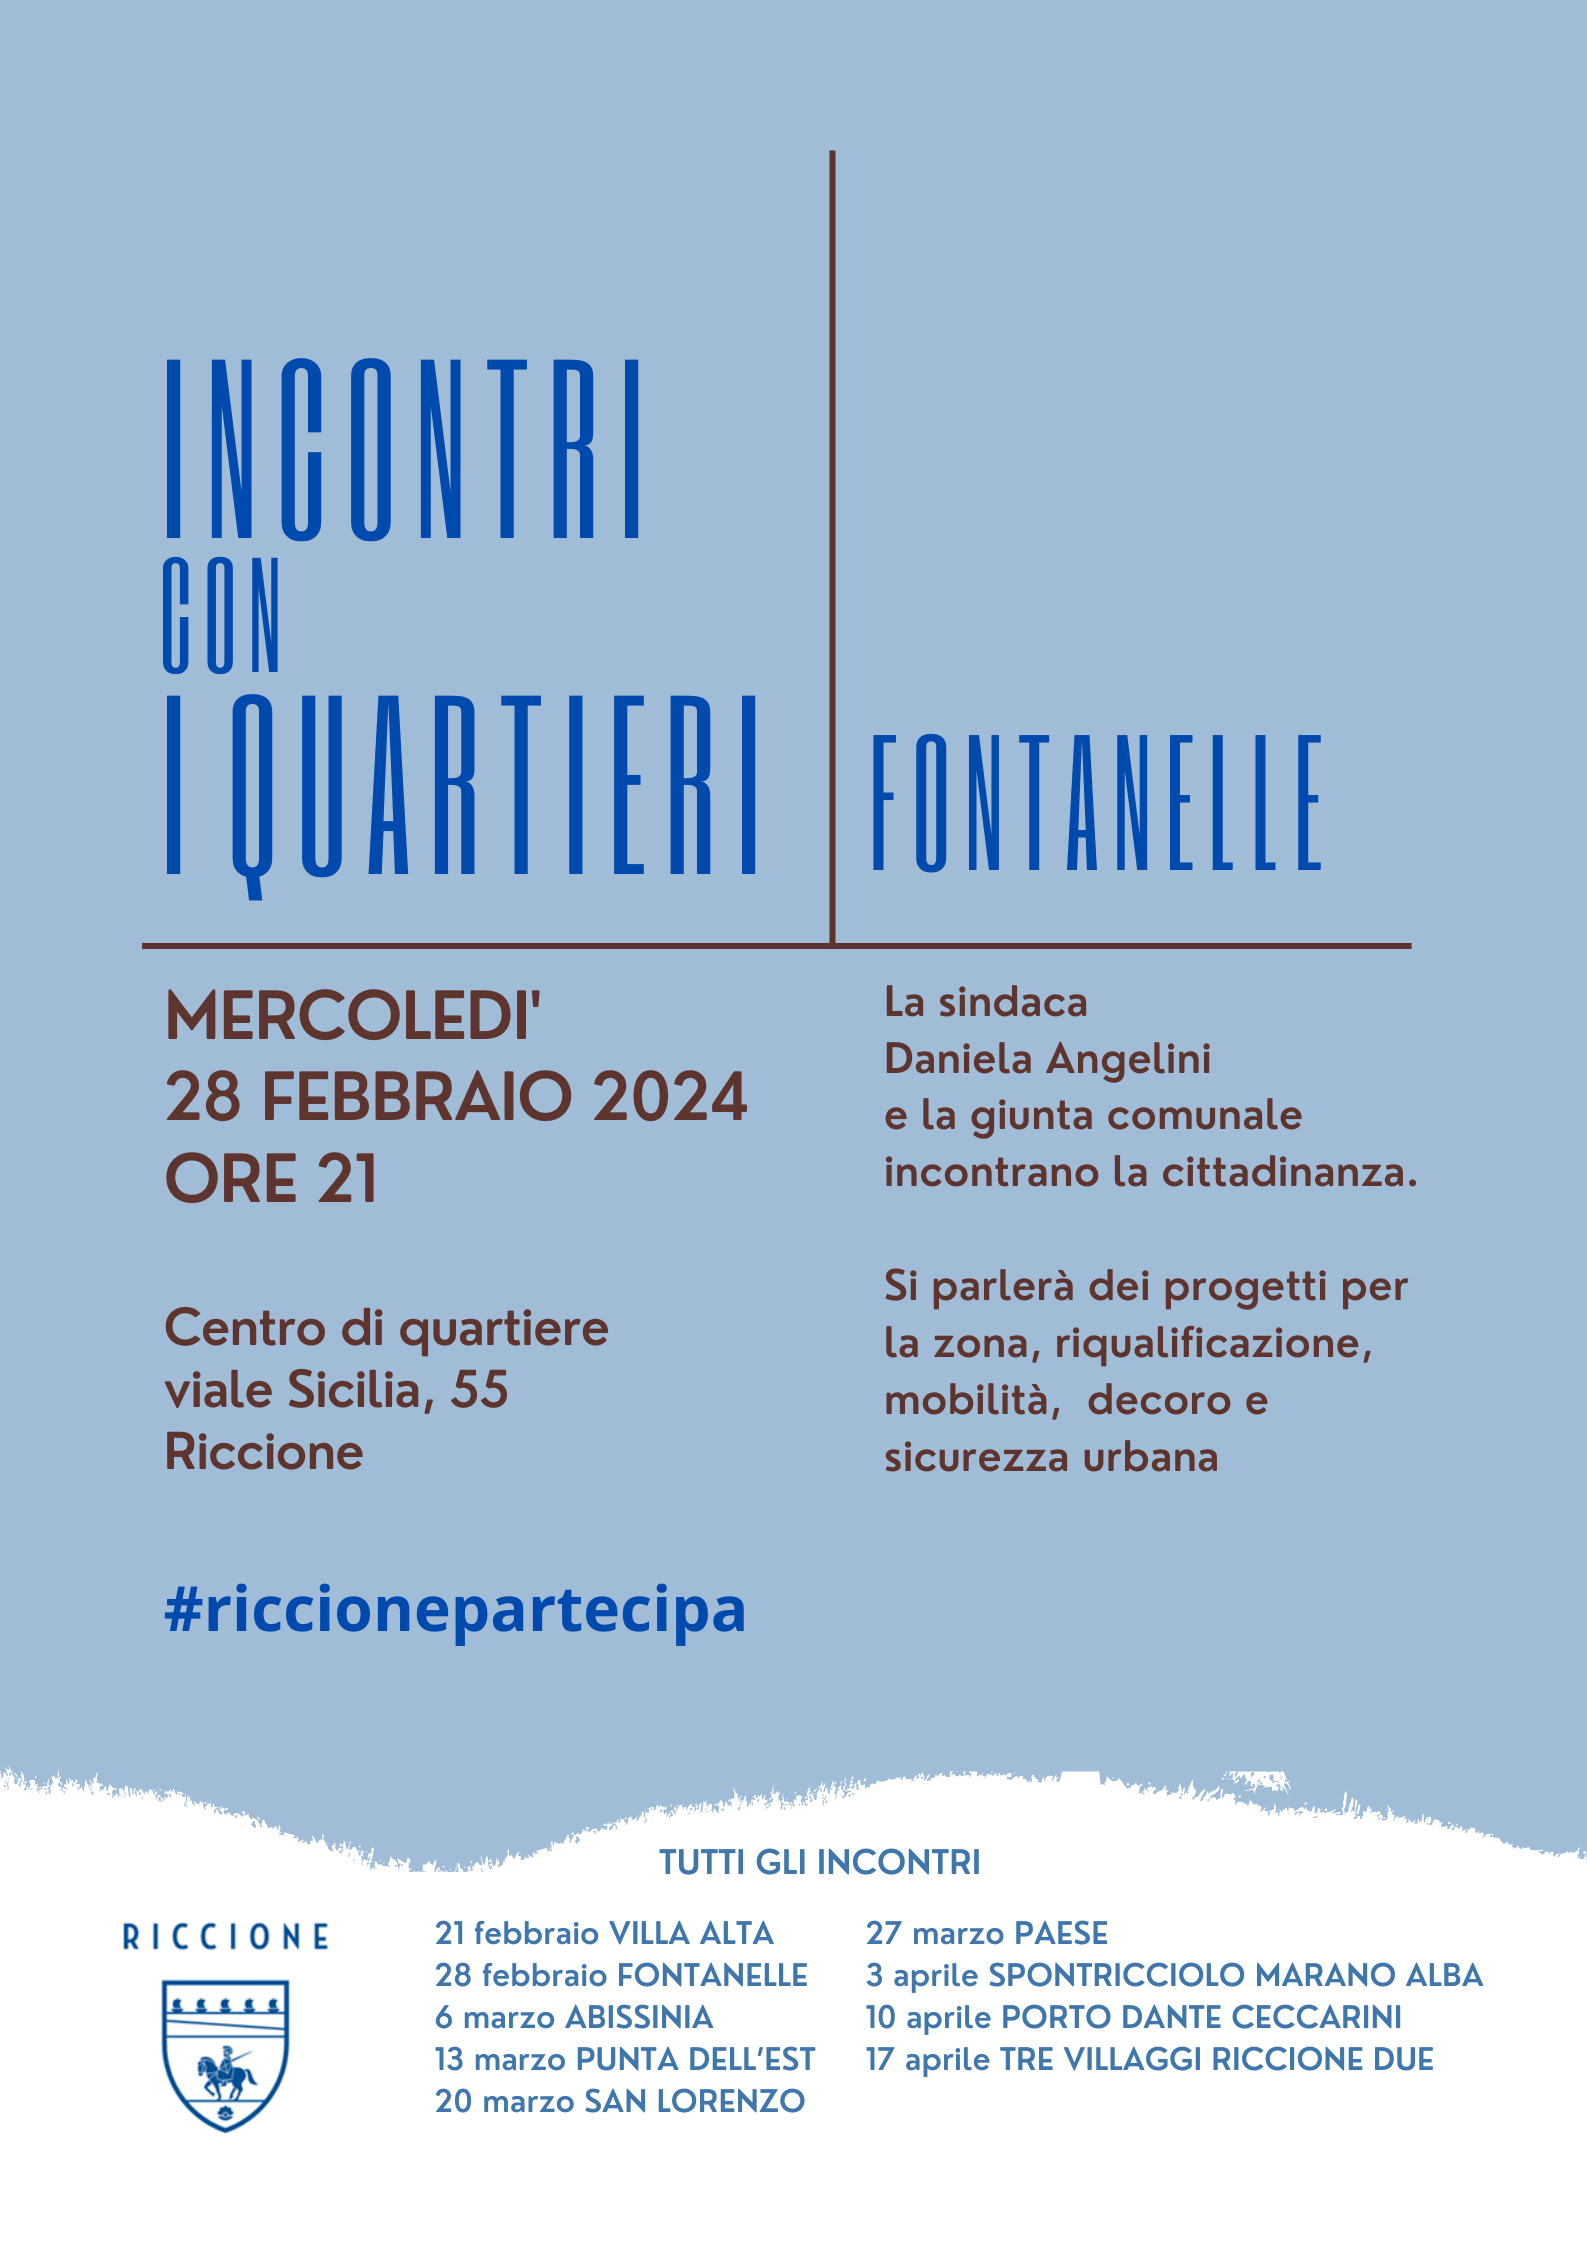 La sindaca Angelini e la giunta comunale mercoledì a Fontanelle per ascoltare i cittadini e condividere i progetti